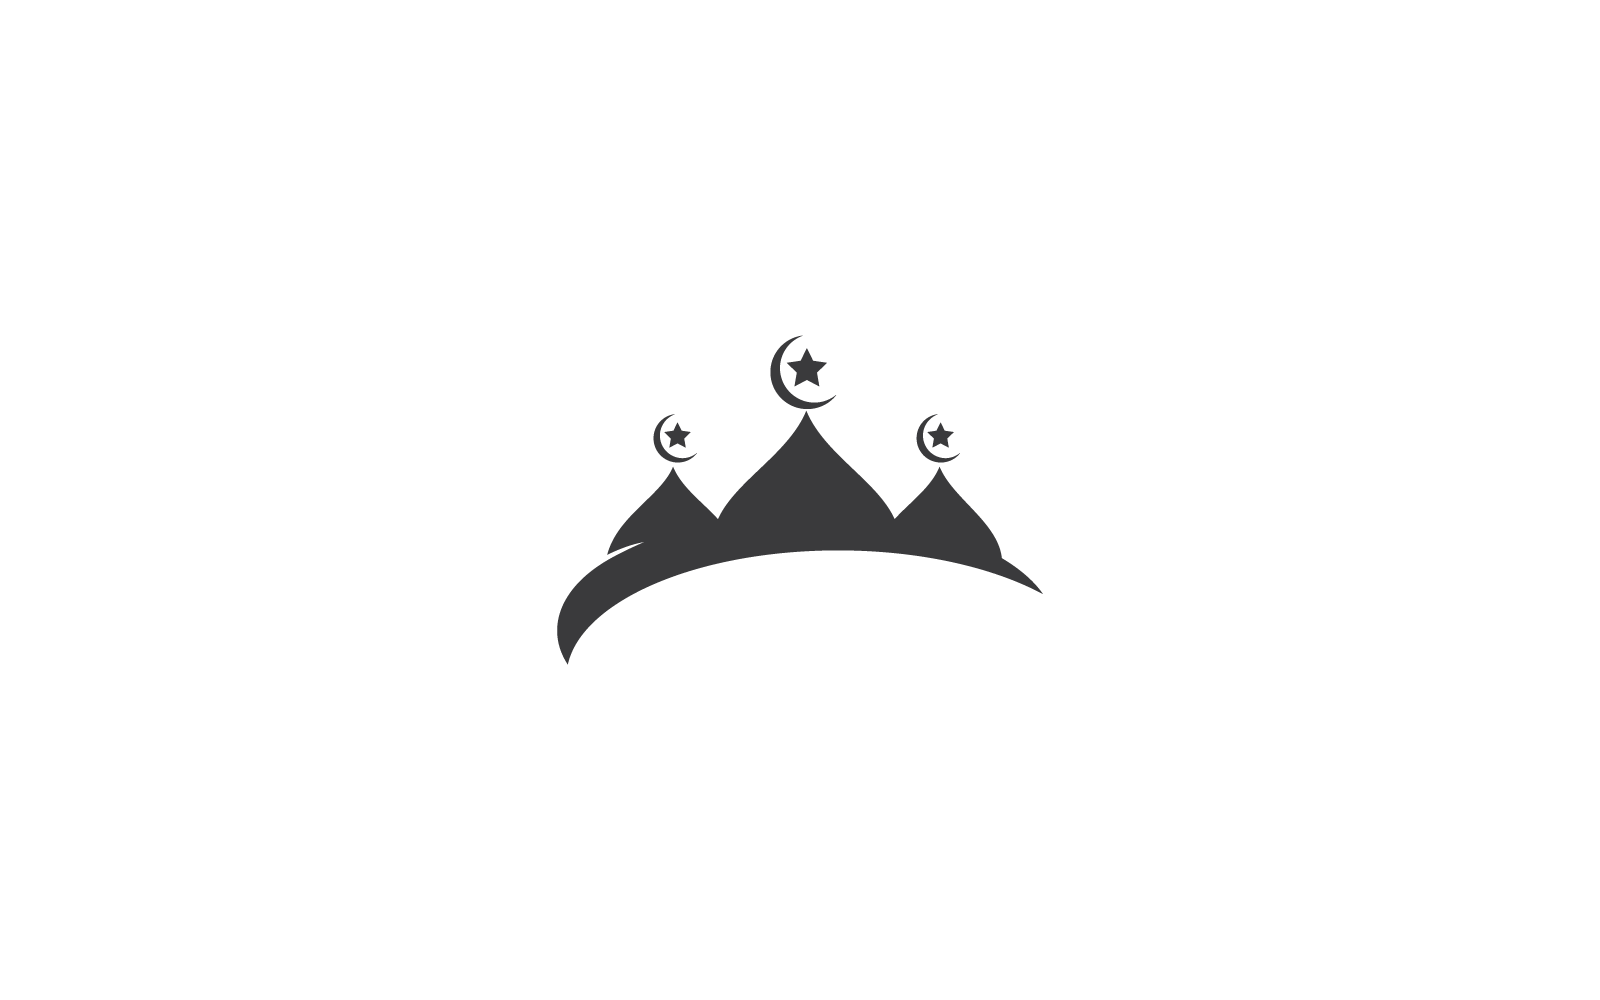 Islamic logo, Mosque design icon vector template